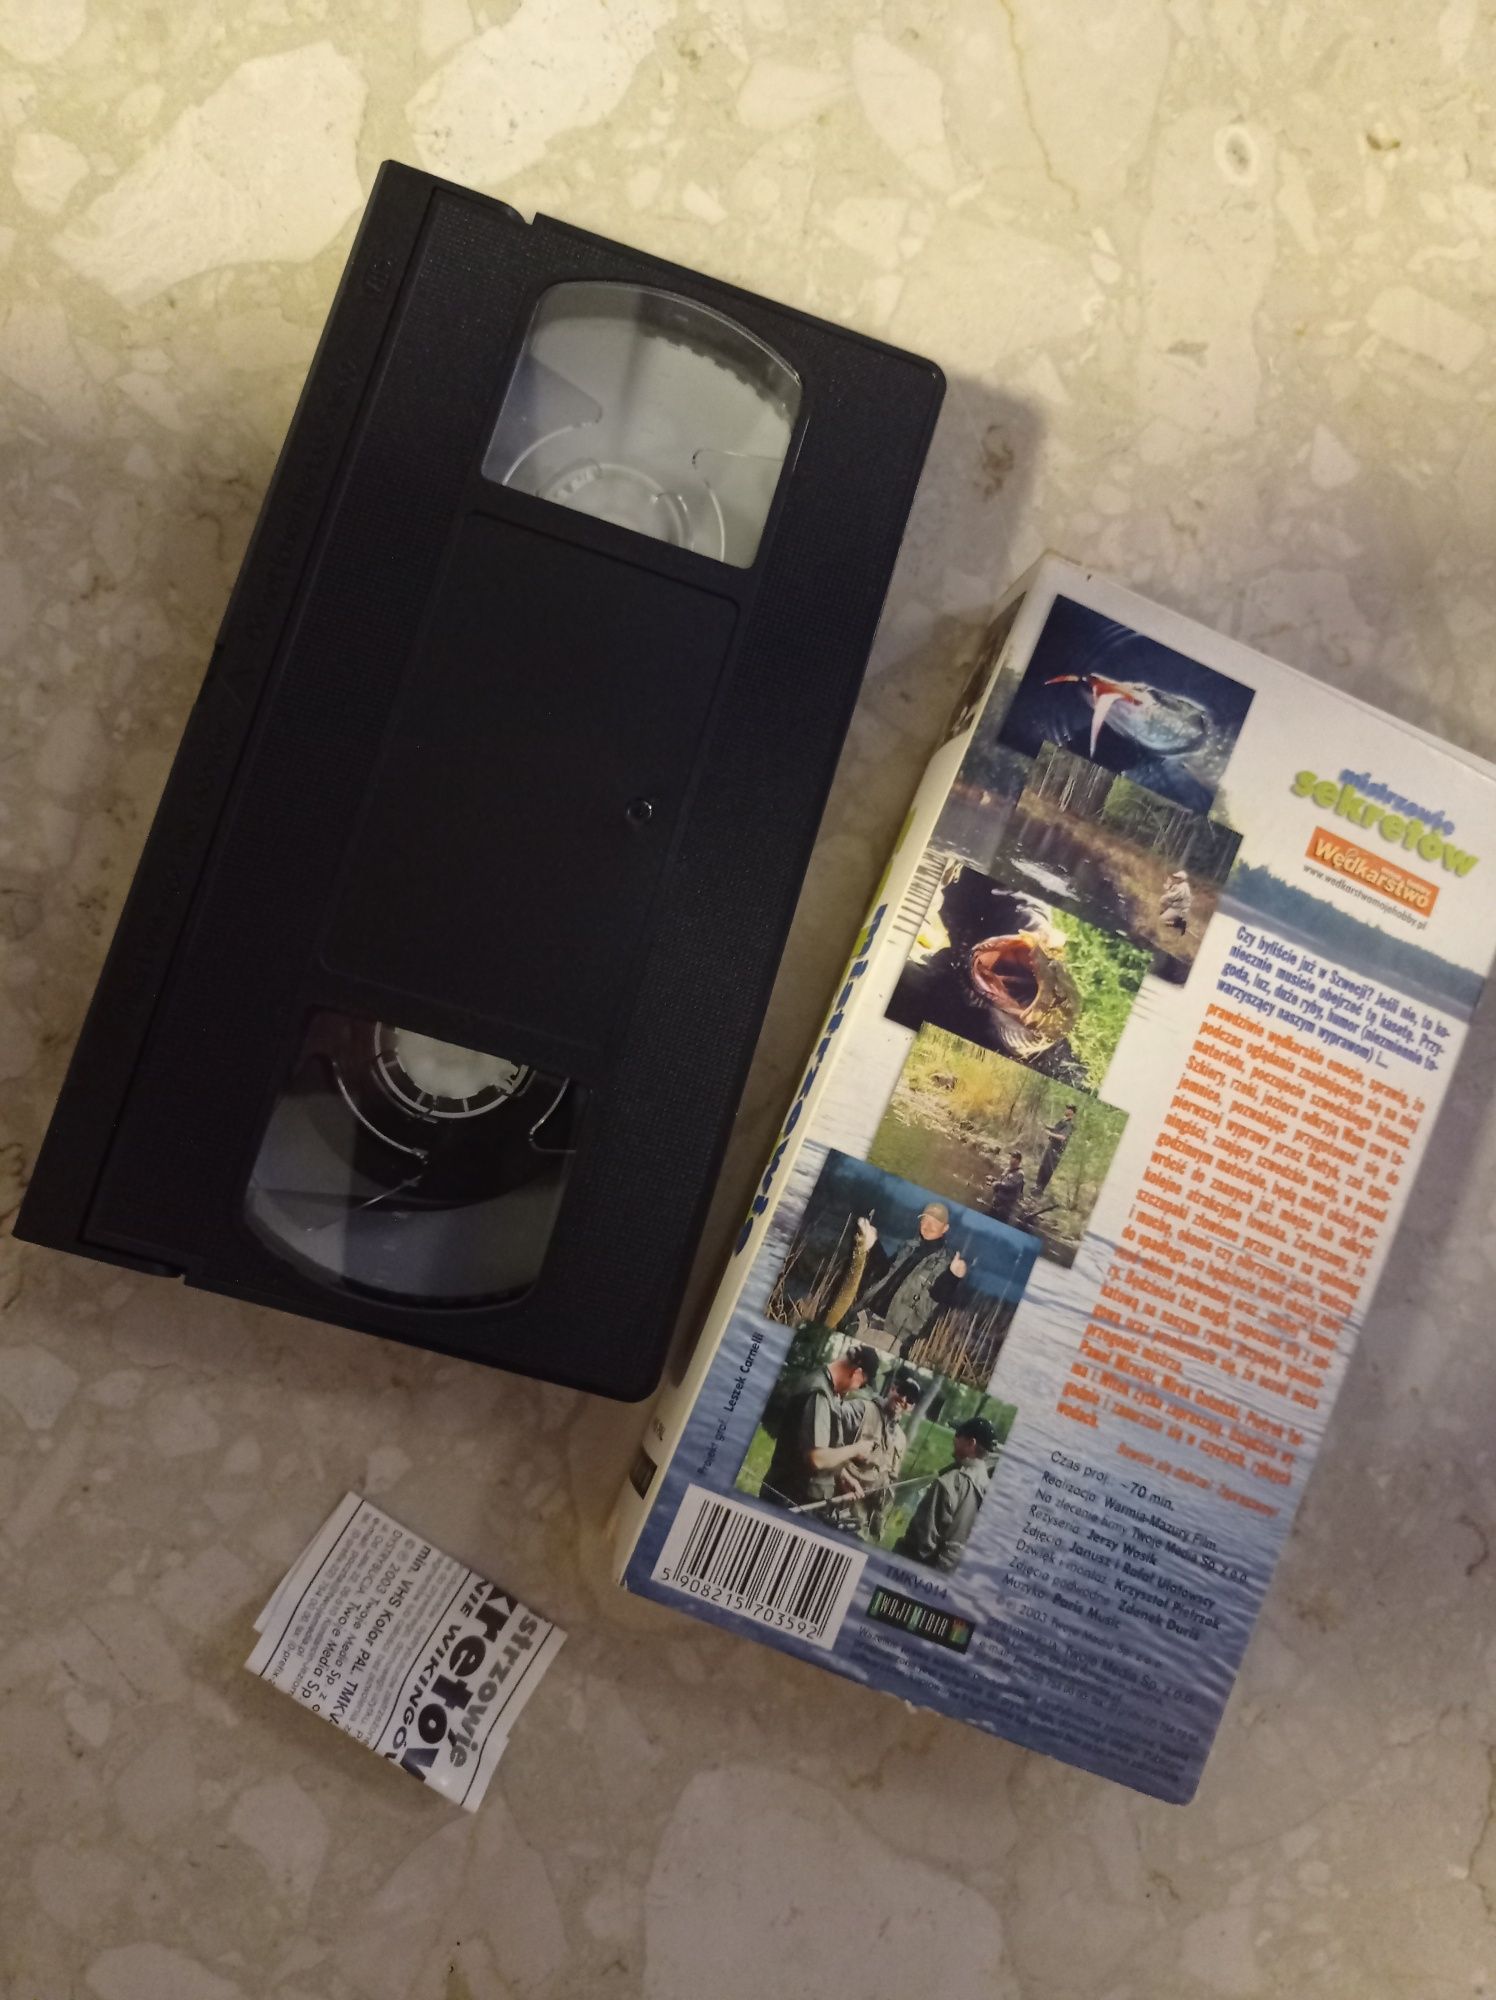 Mistrzowie sekretów wędkarstwo VHS